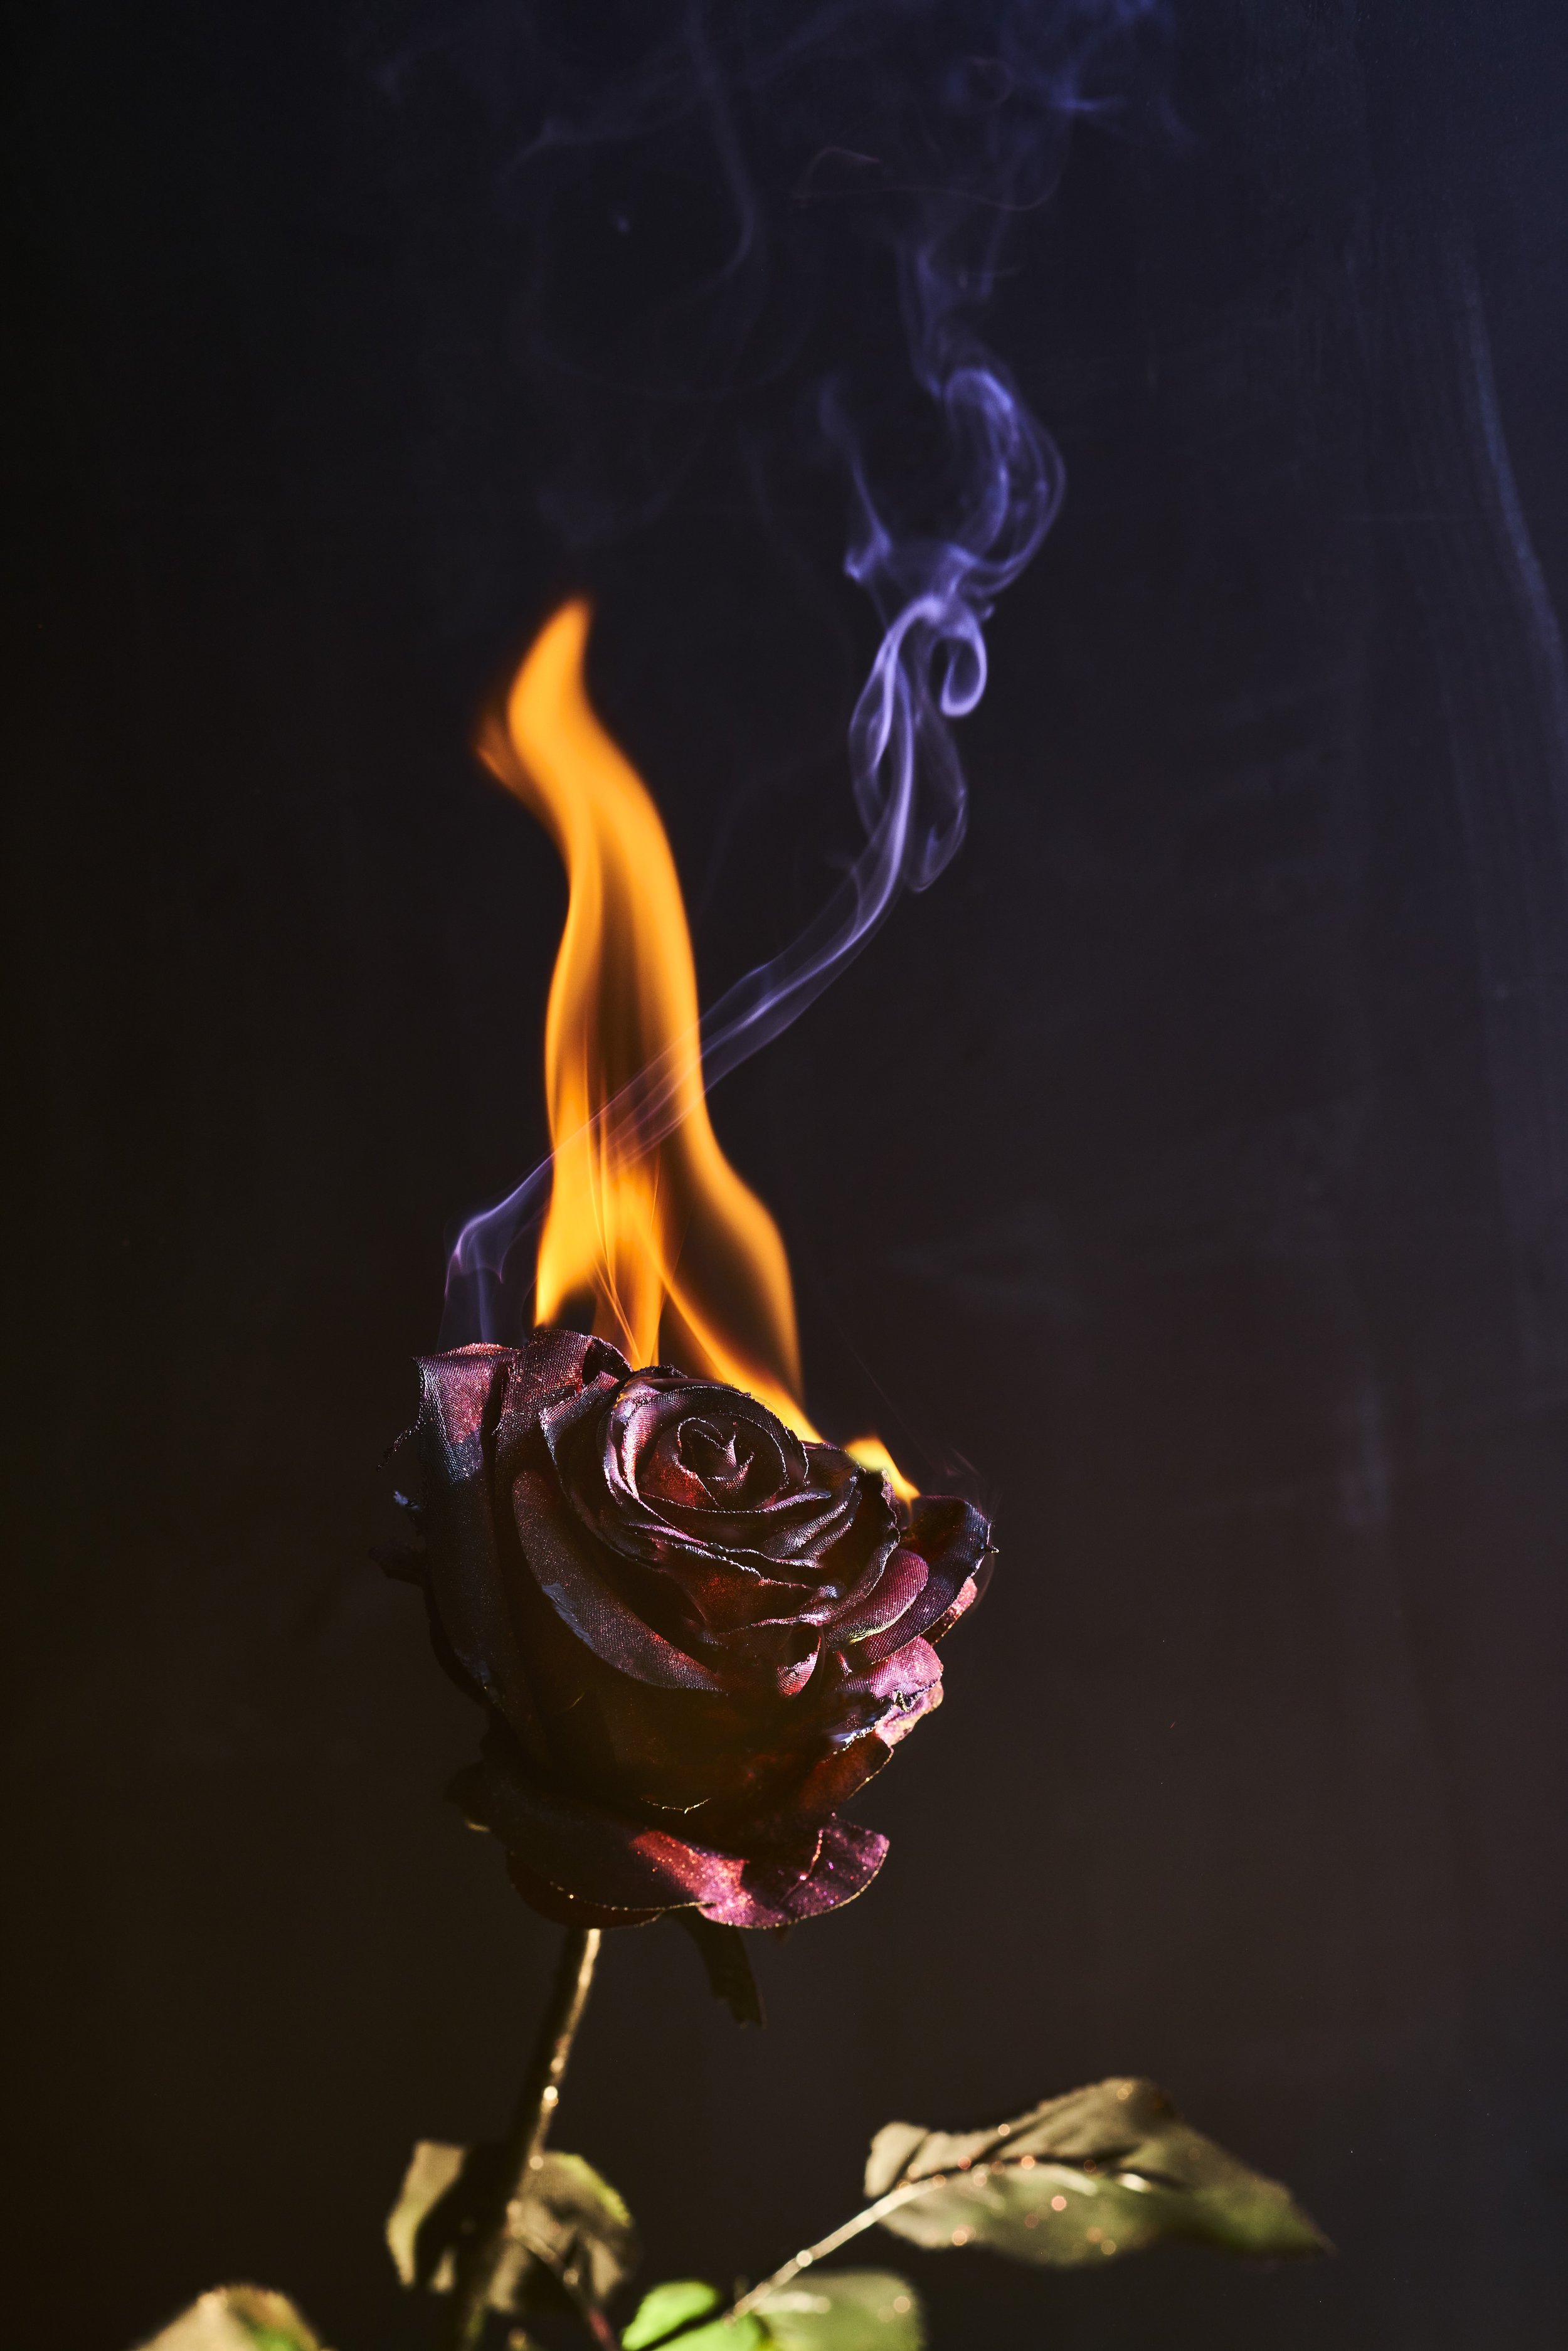 221101_ftd_shot_07_burning_flower_069.jpg